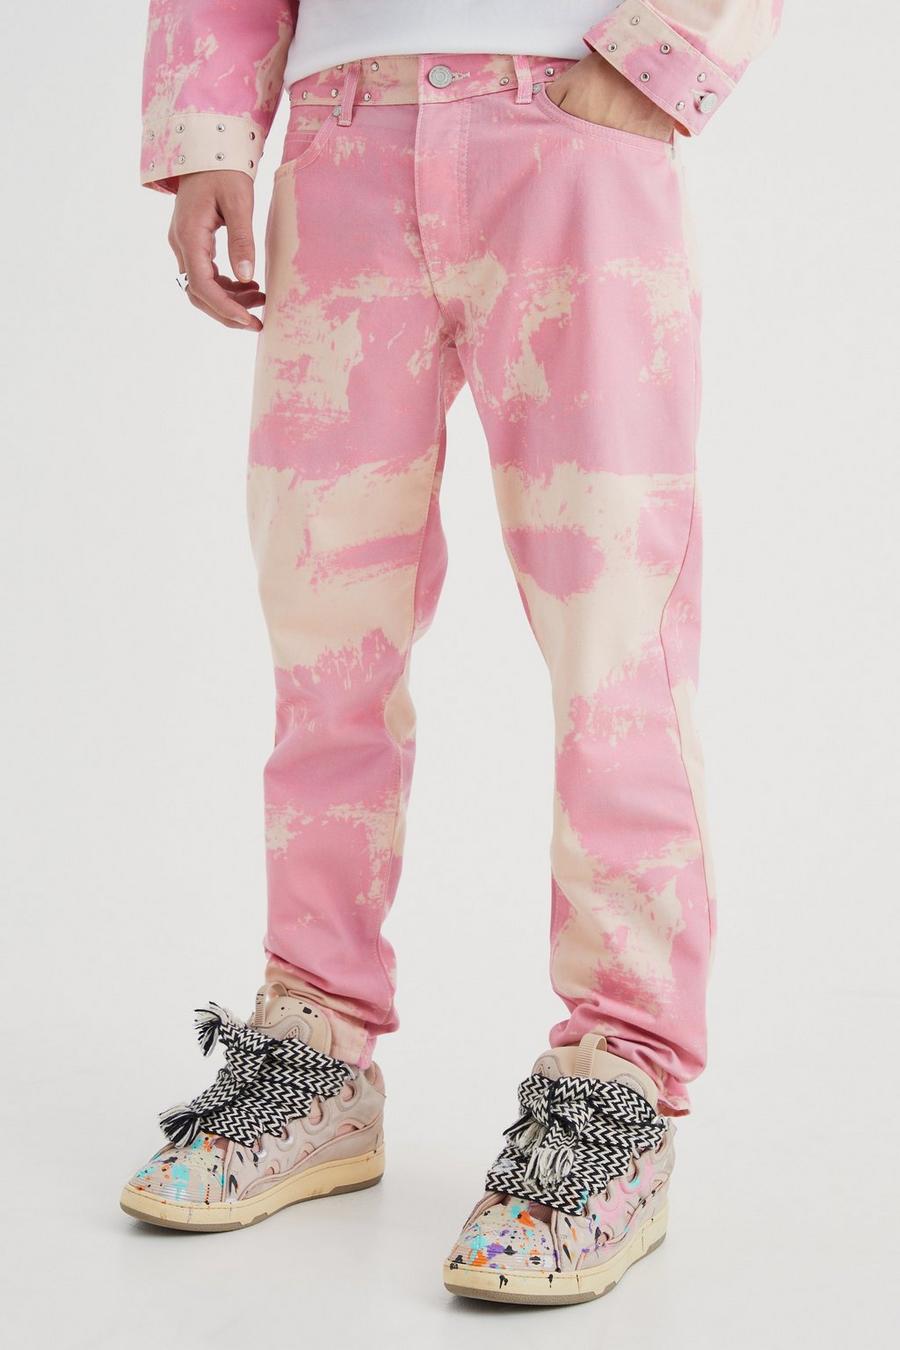 Jeans Slim Fit in denim rigido candeggiati con inserti, Pink